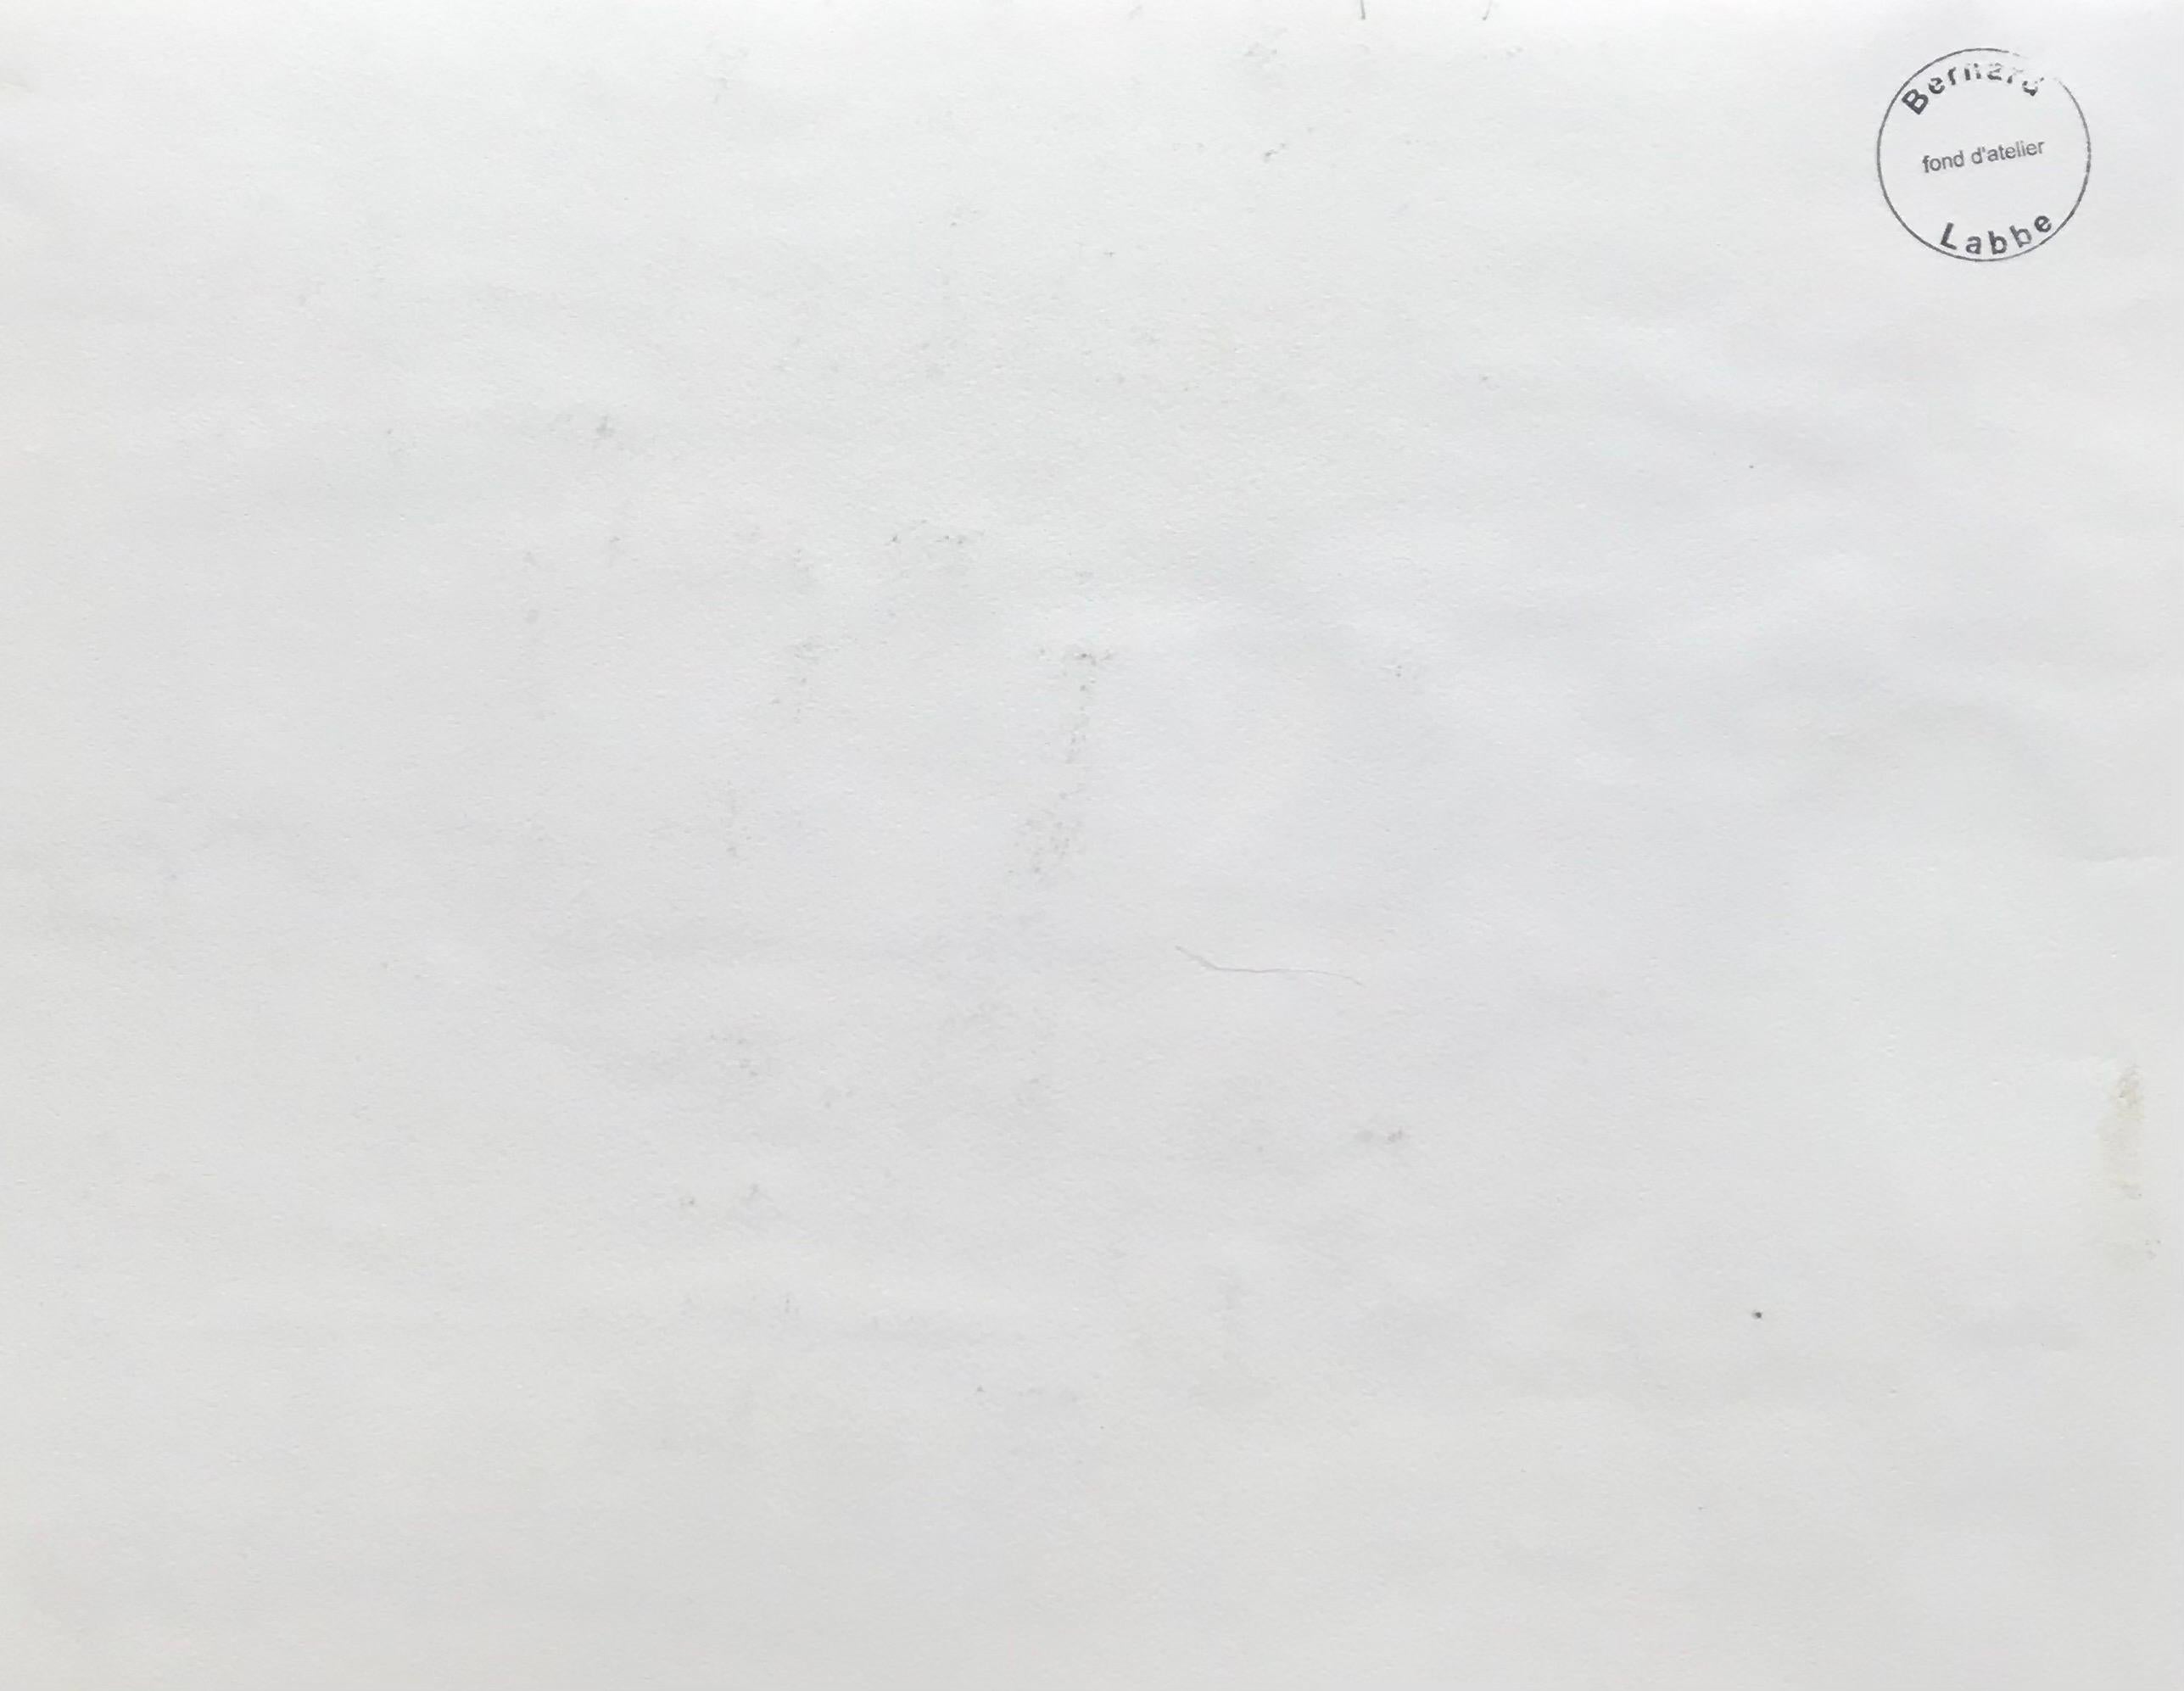 Französische Landschaft
von Bernard Labbe (Französisch, Mitte 20. Jahrhundert)
original-Aquarell auf Künstlerpapier, ungerahmt
verso gestempelt
größe: 9,5 x 12,5 Zoll
zustand: sehr gut und genussbereit. 

provenienz: Atelier des Künstlers,